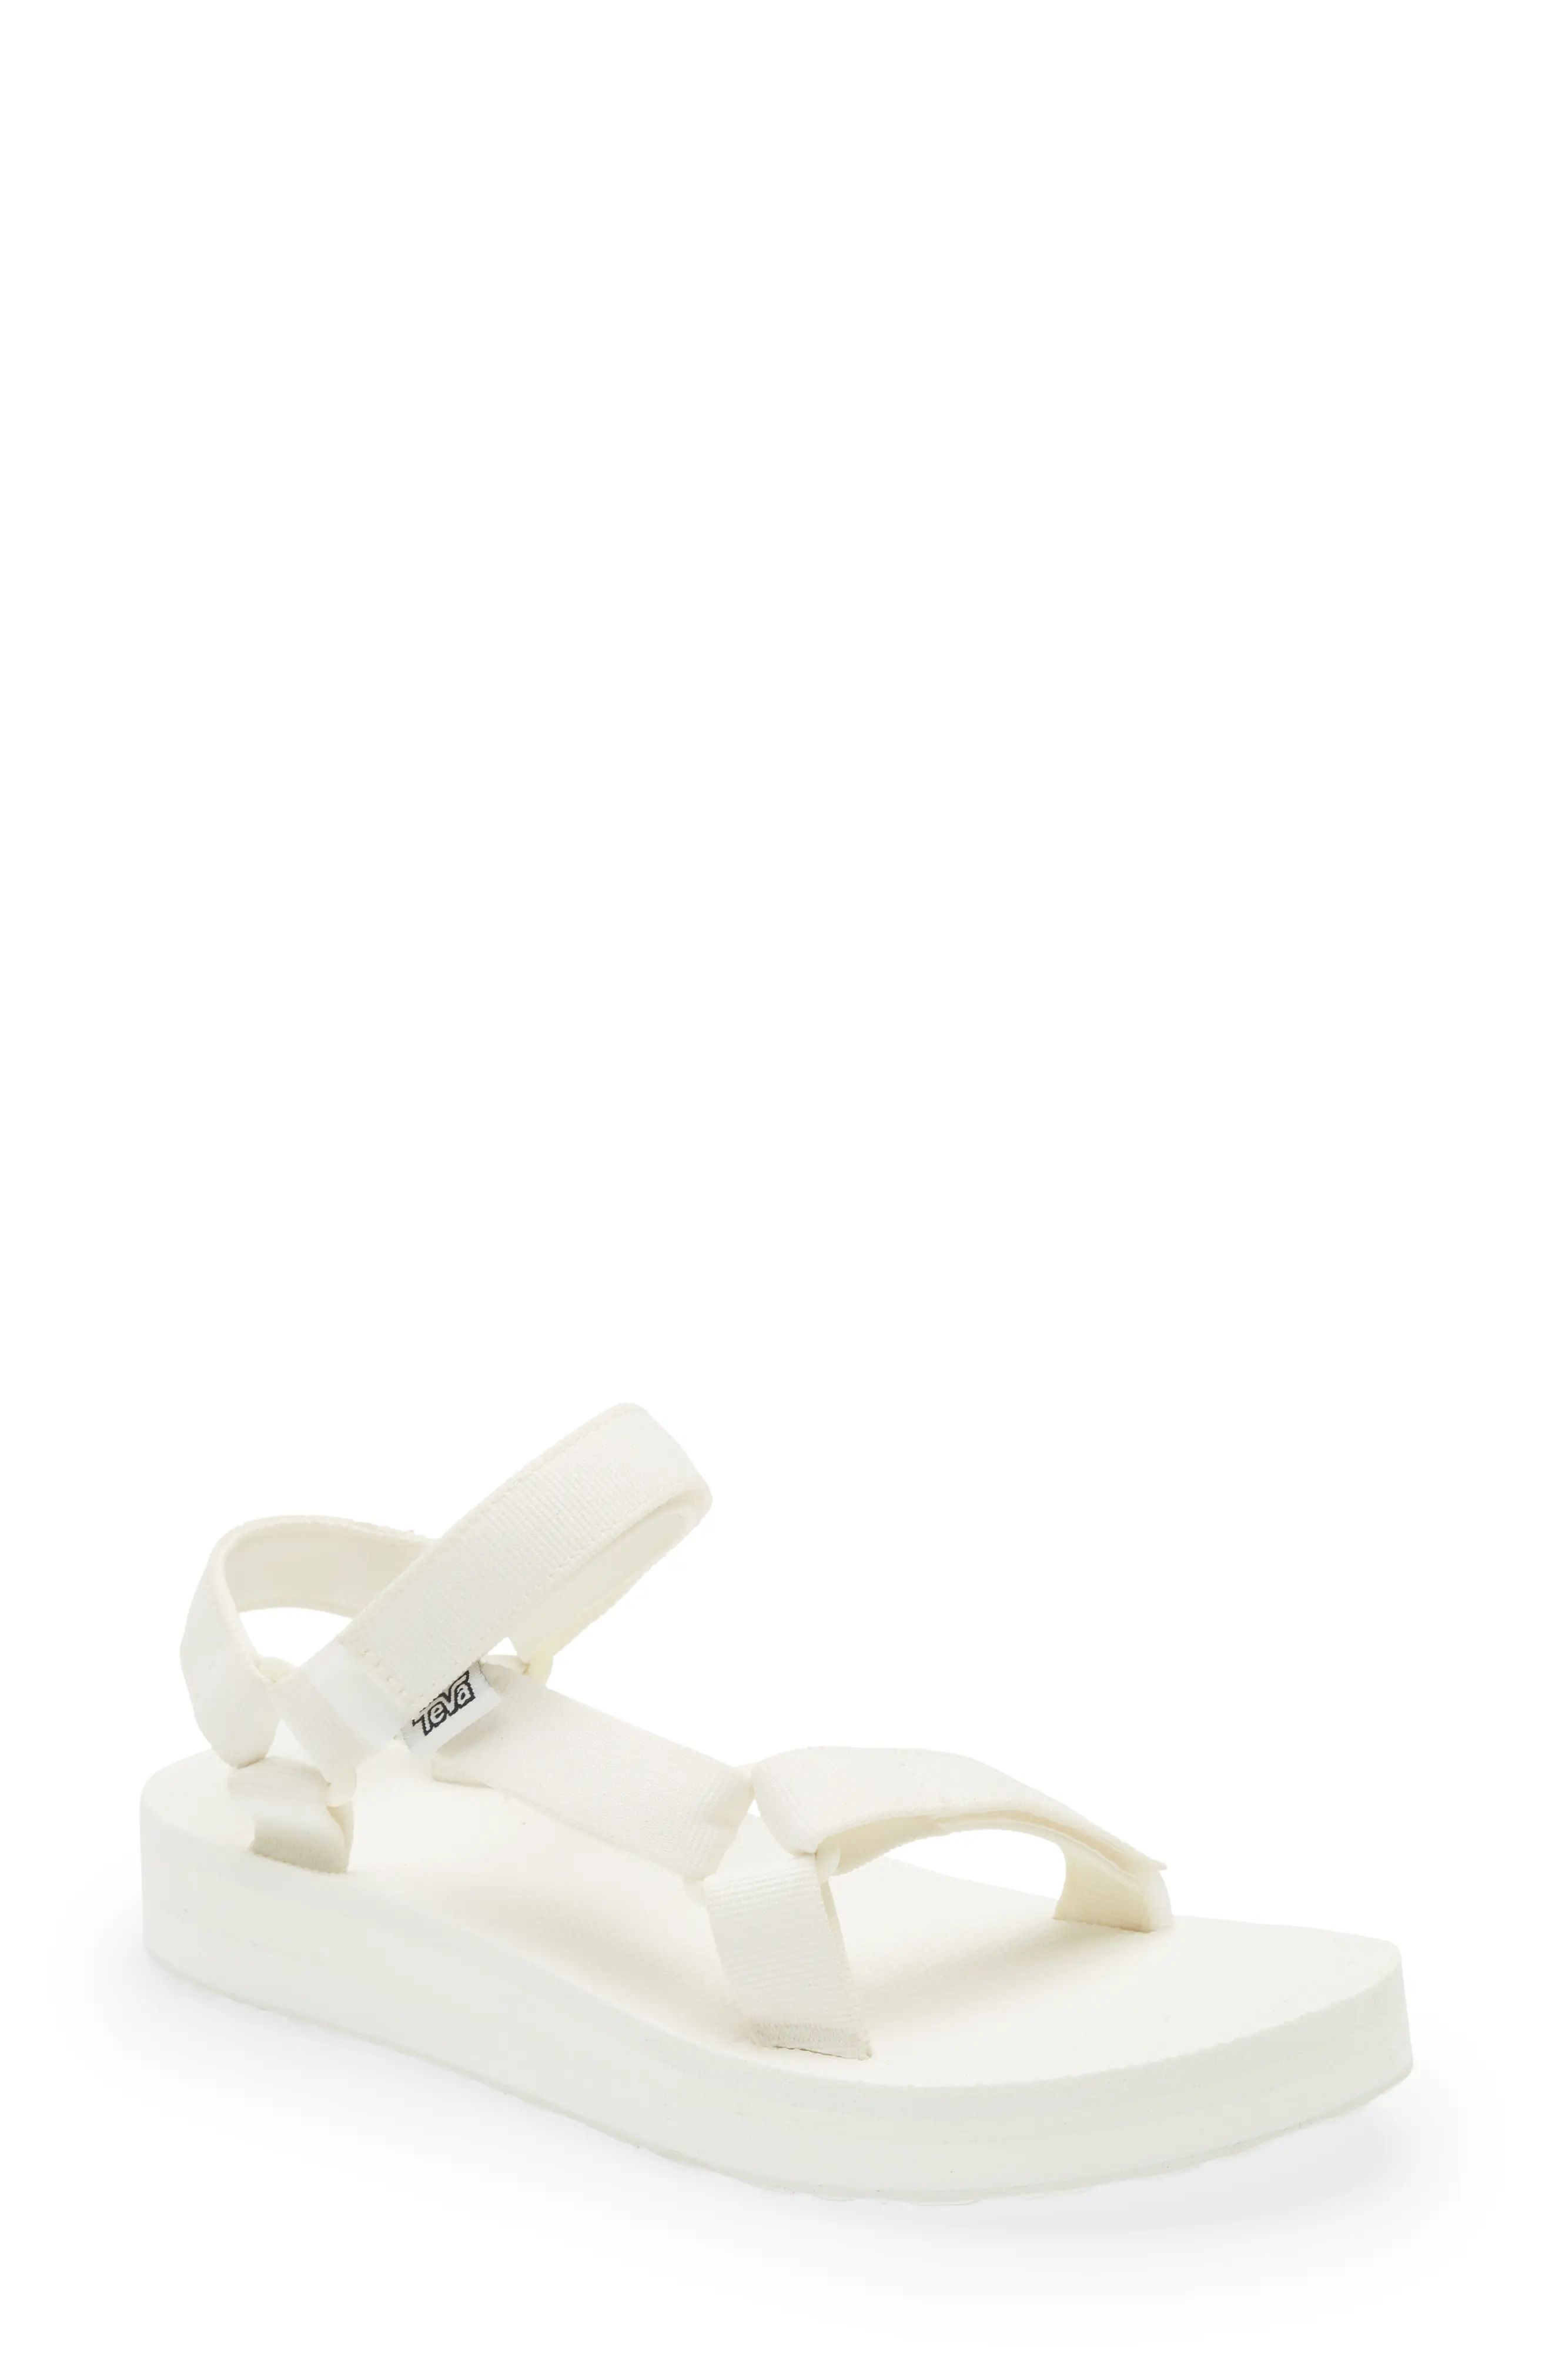 Teva Midform Universal Sandal in Bright White at Nordstrom, Size 11 | Nordstrom